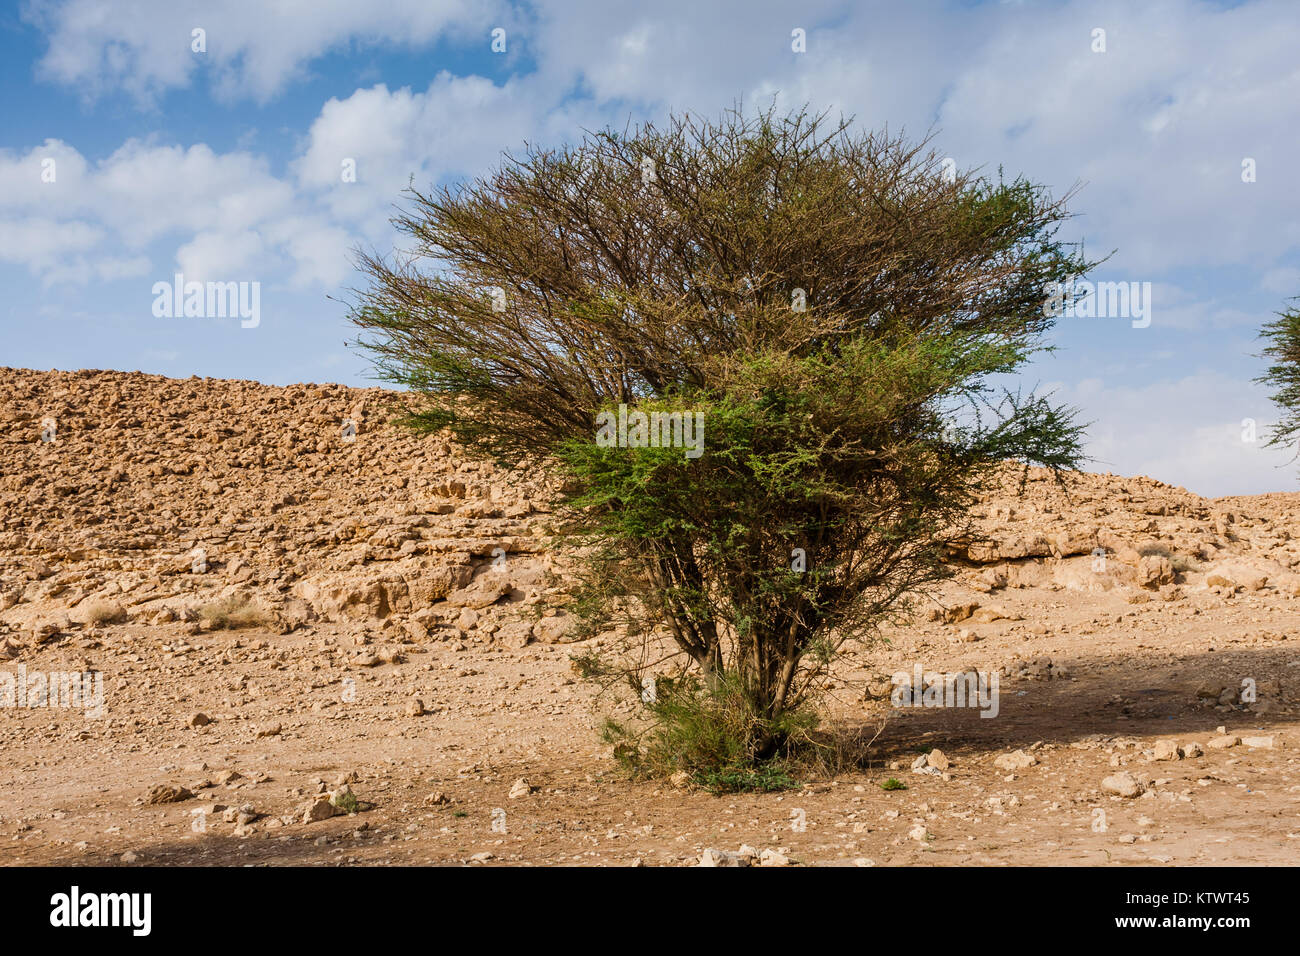 An acacia tree in the desert, Saudi Arabia Stock Photo